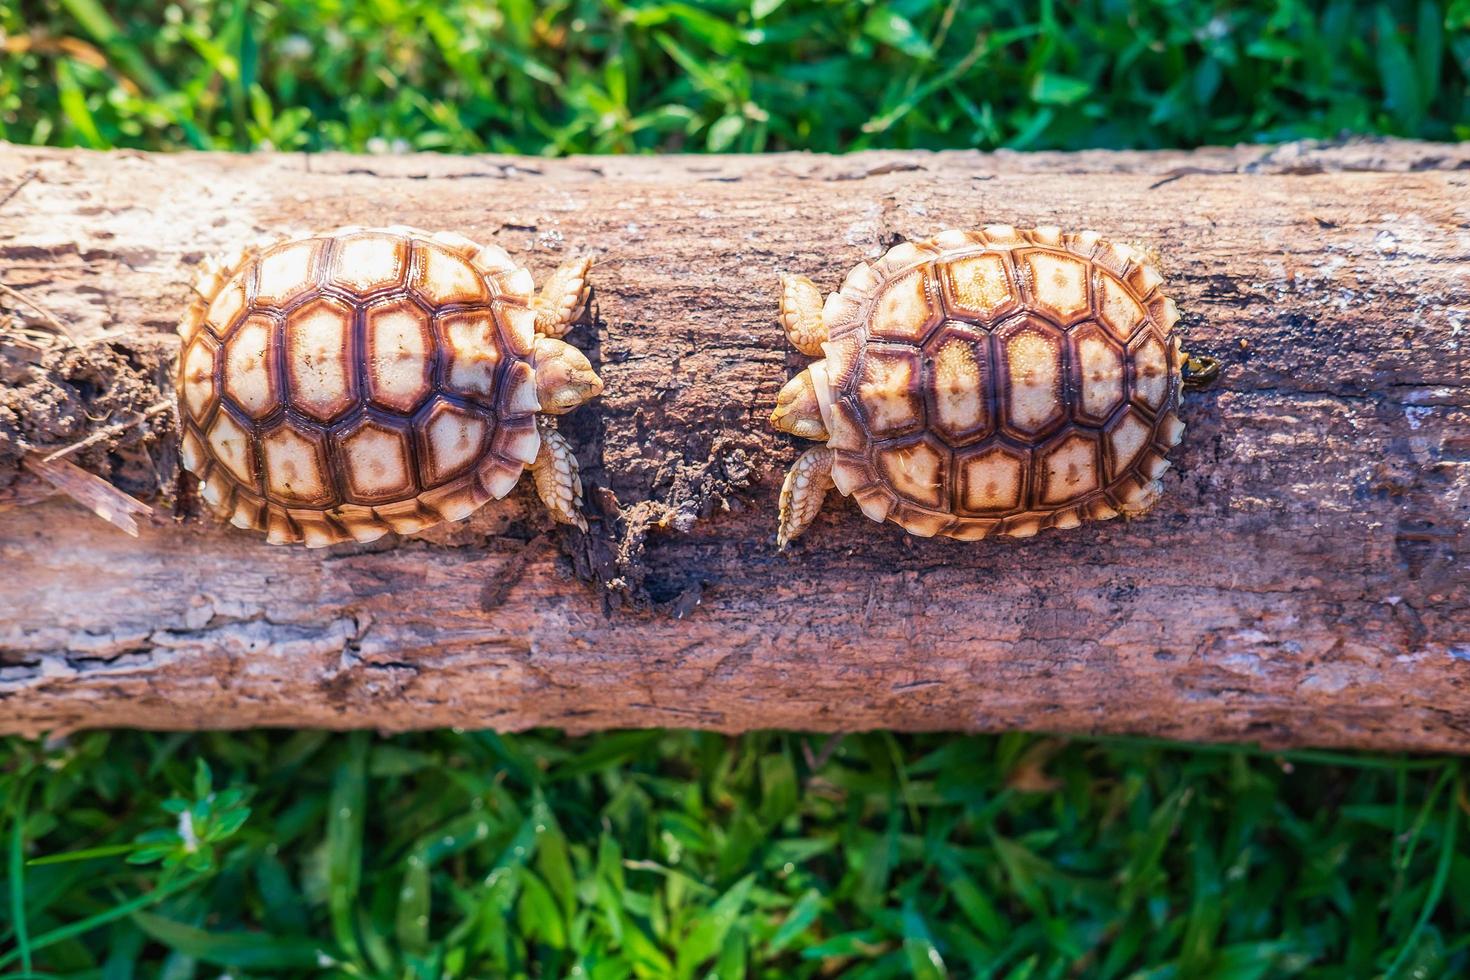 deux tortues sukata dans la forêt photo